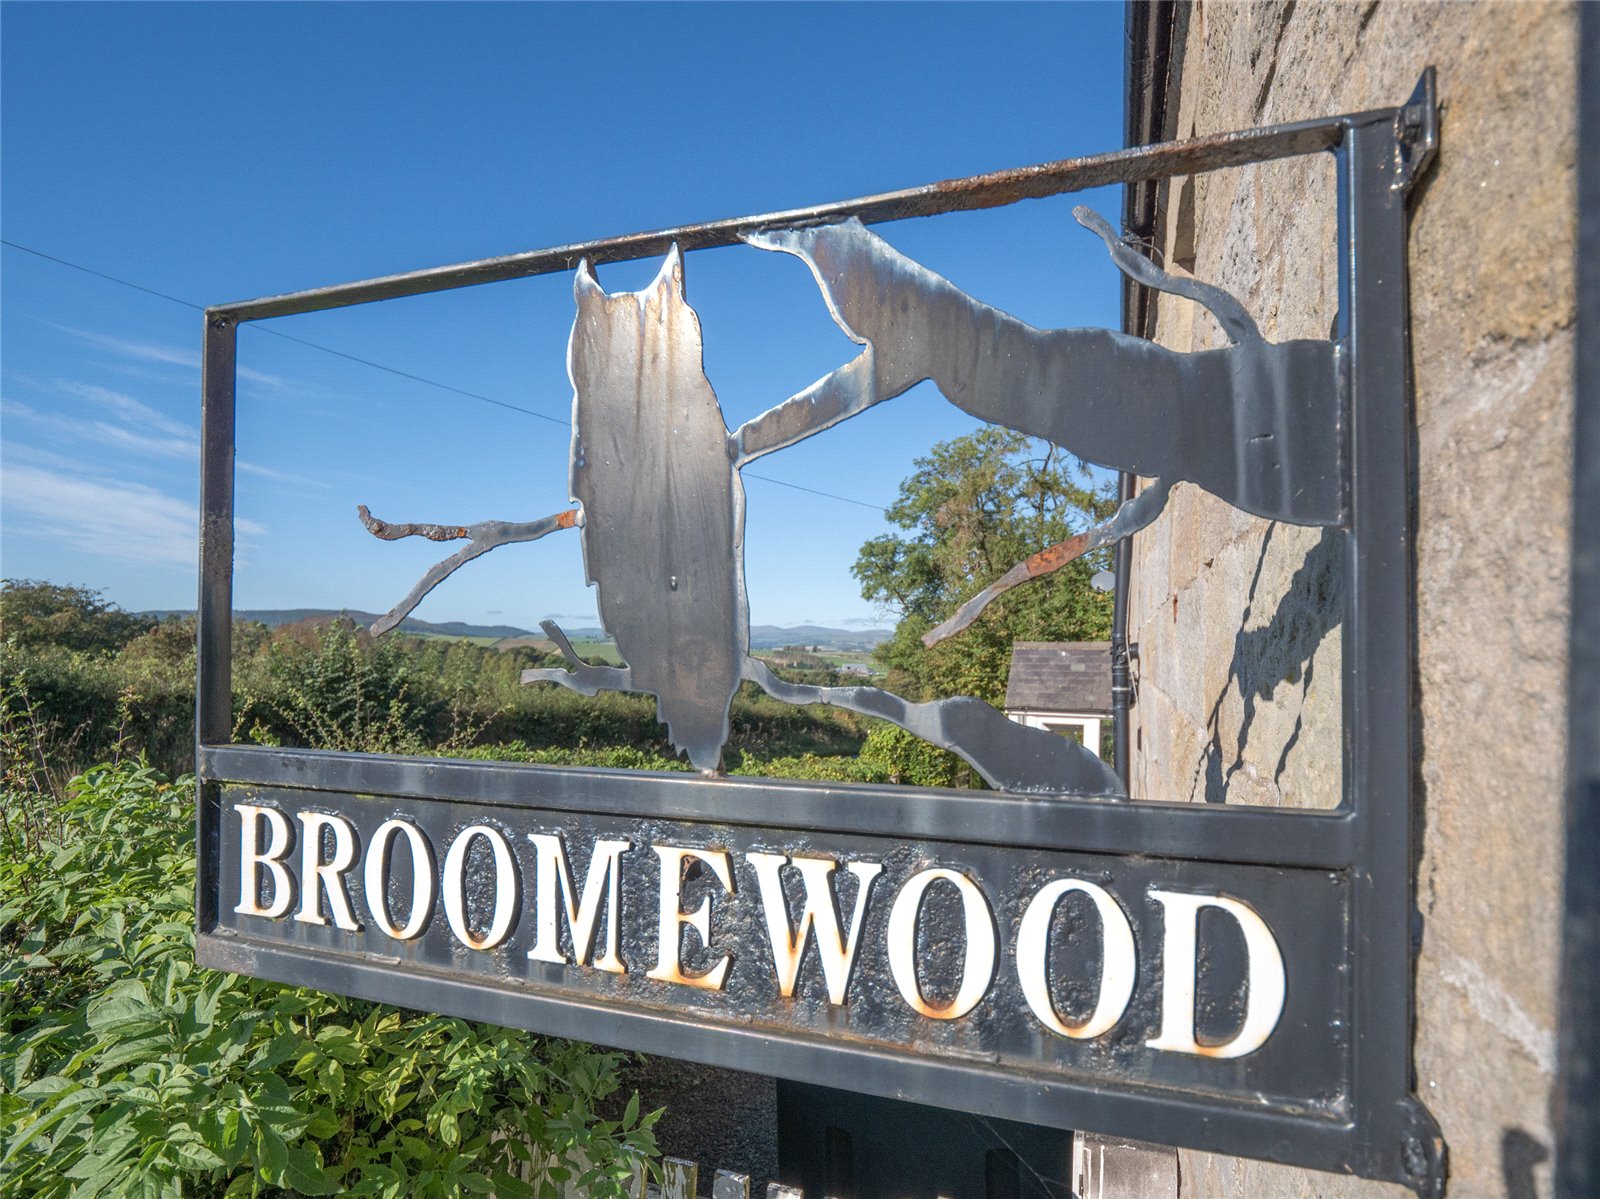 Broomewood